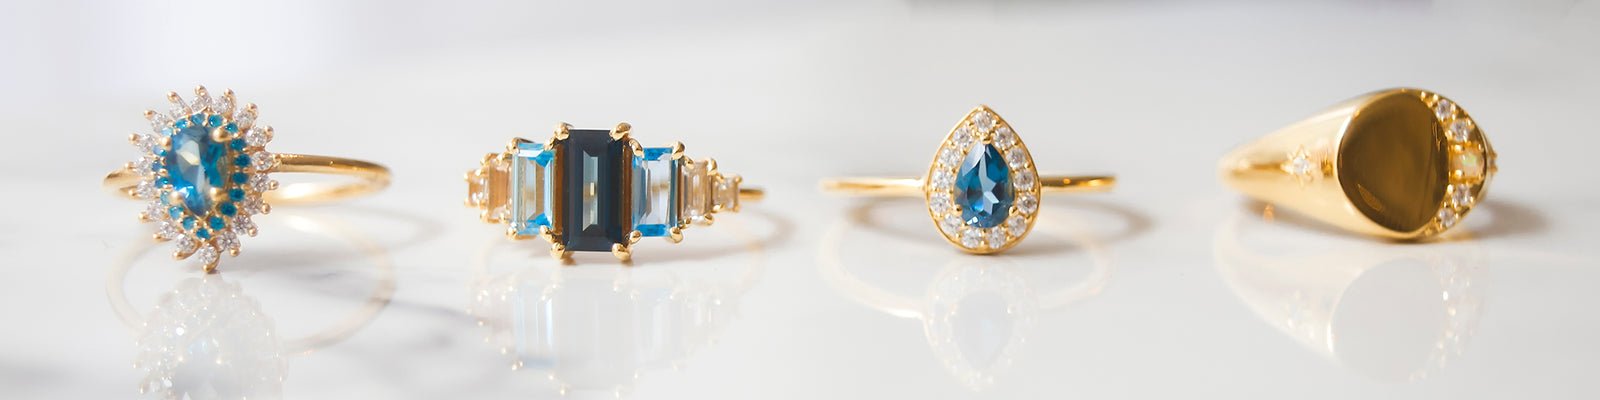 Opal, Diamond & Moonstone Rings | Fine Jewelry Rings for Women